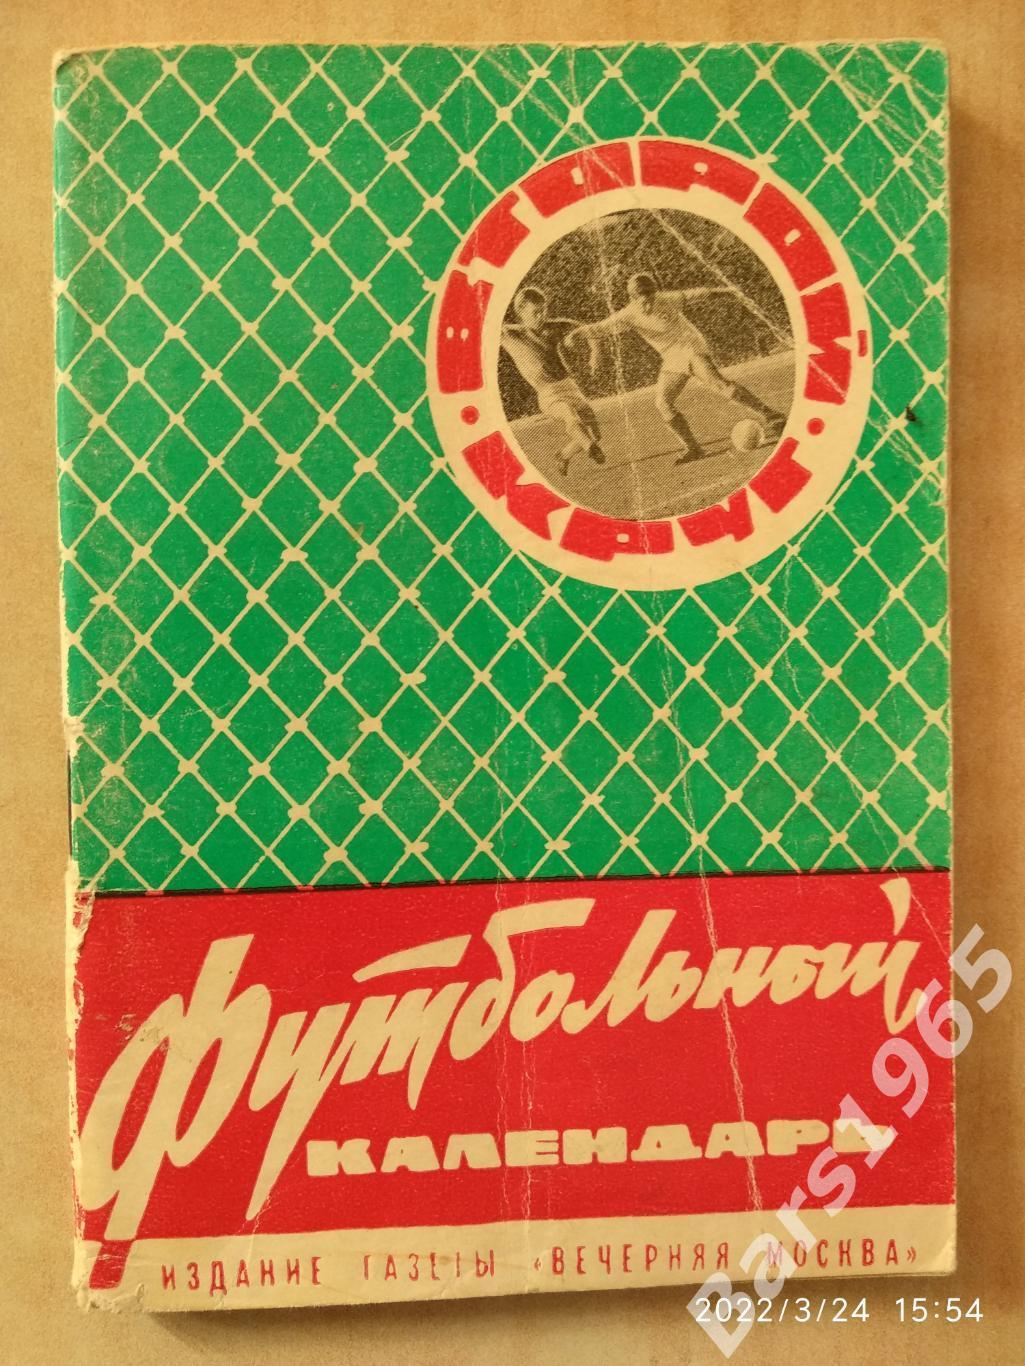 Вечерняя Москва 1965 Второй круг